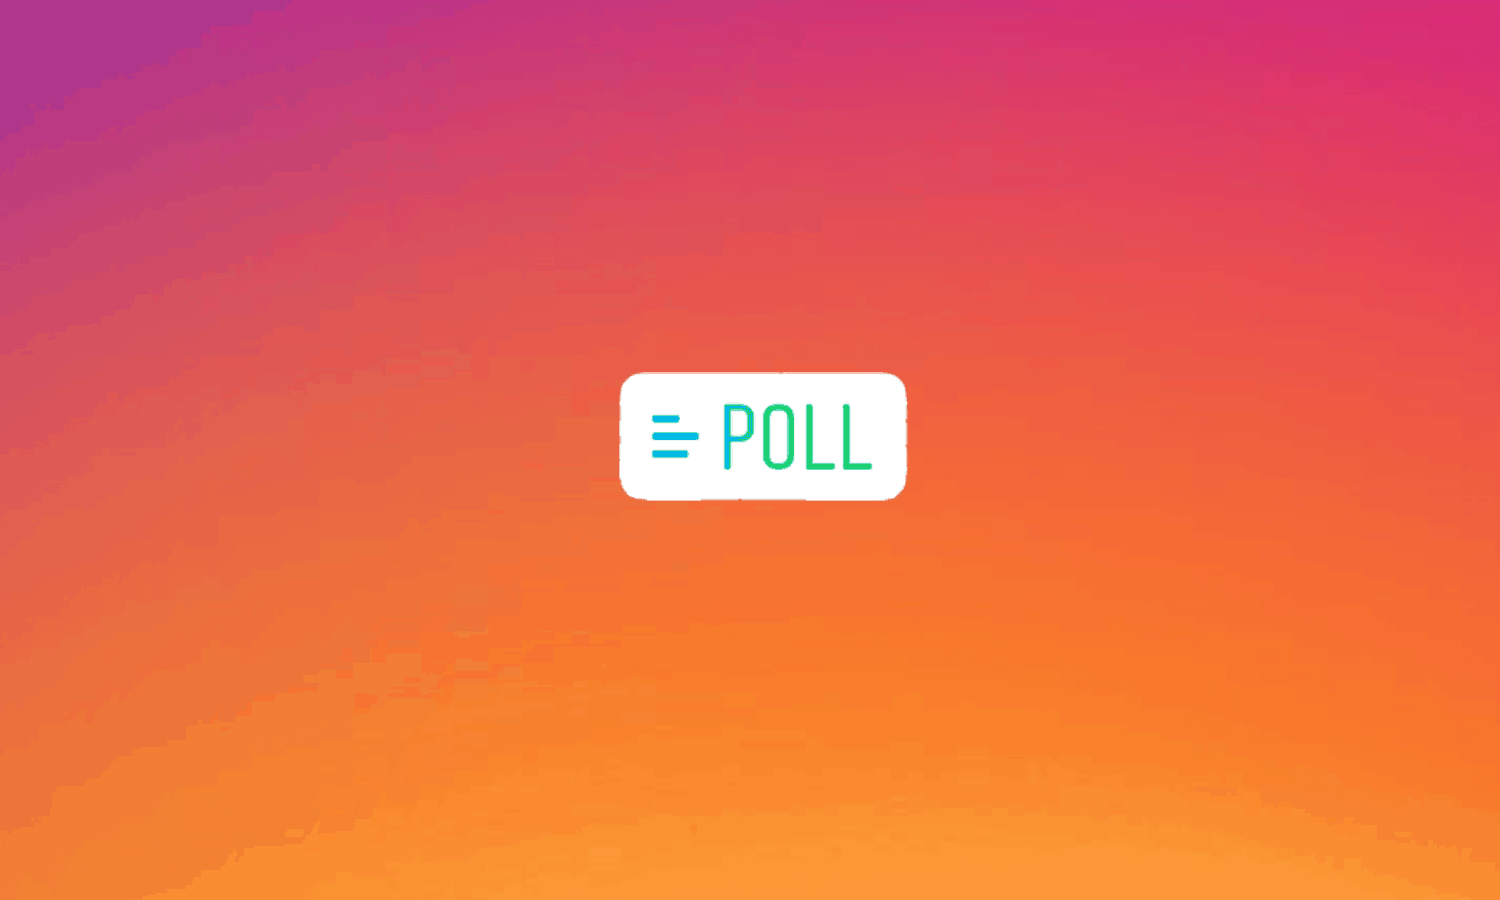 Cum adaugi Poll in Instagram Stories